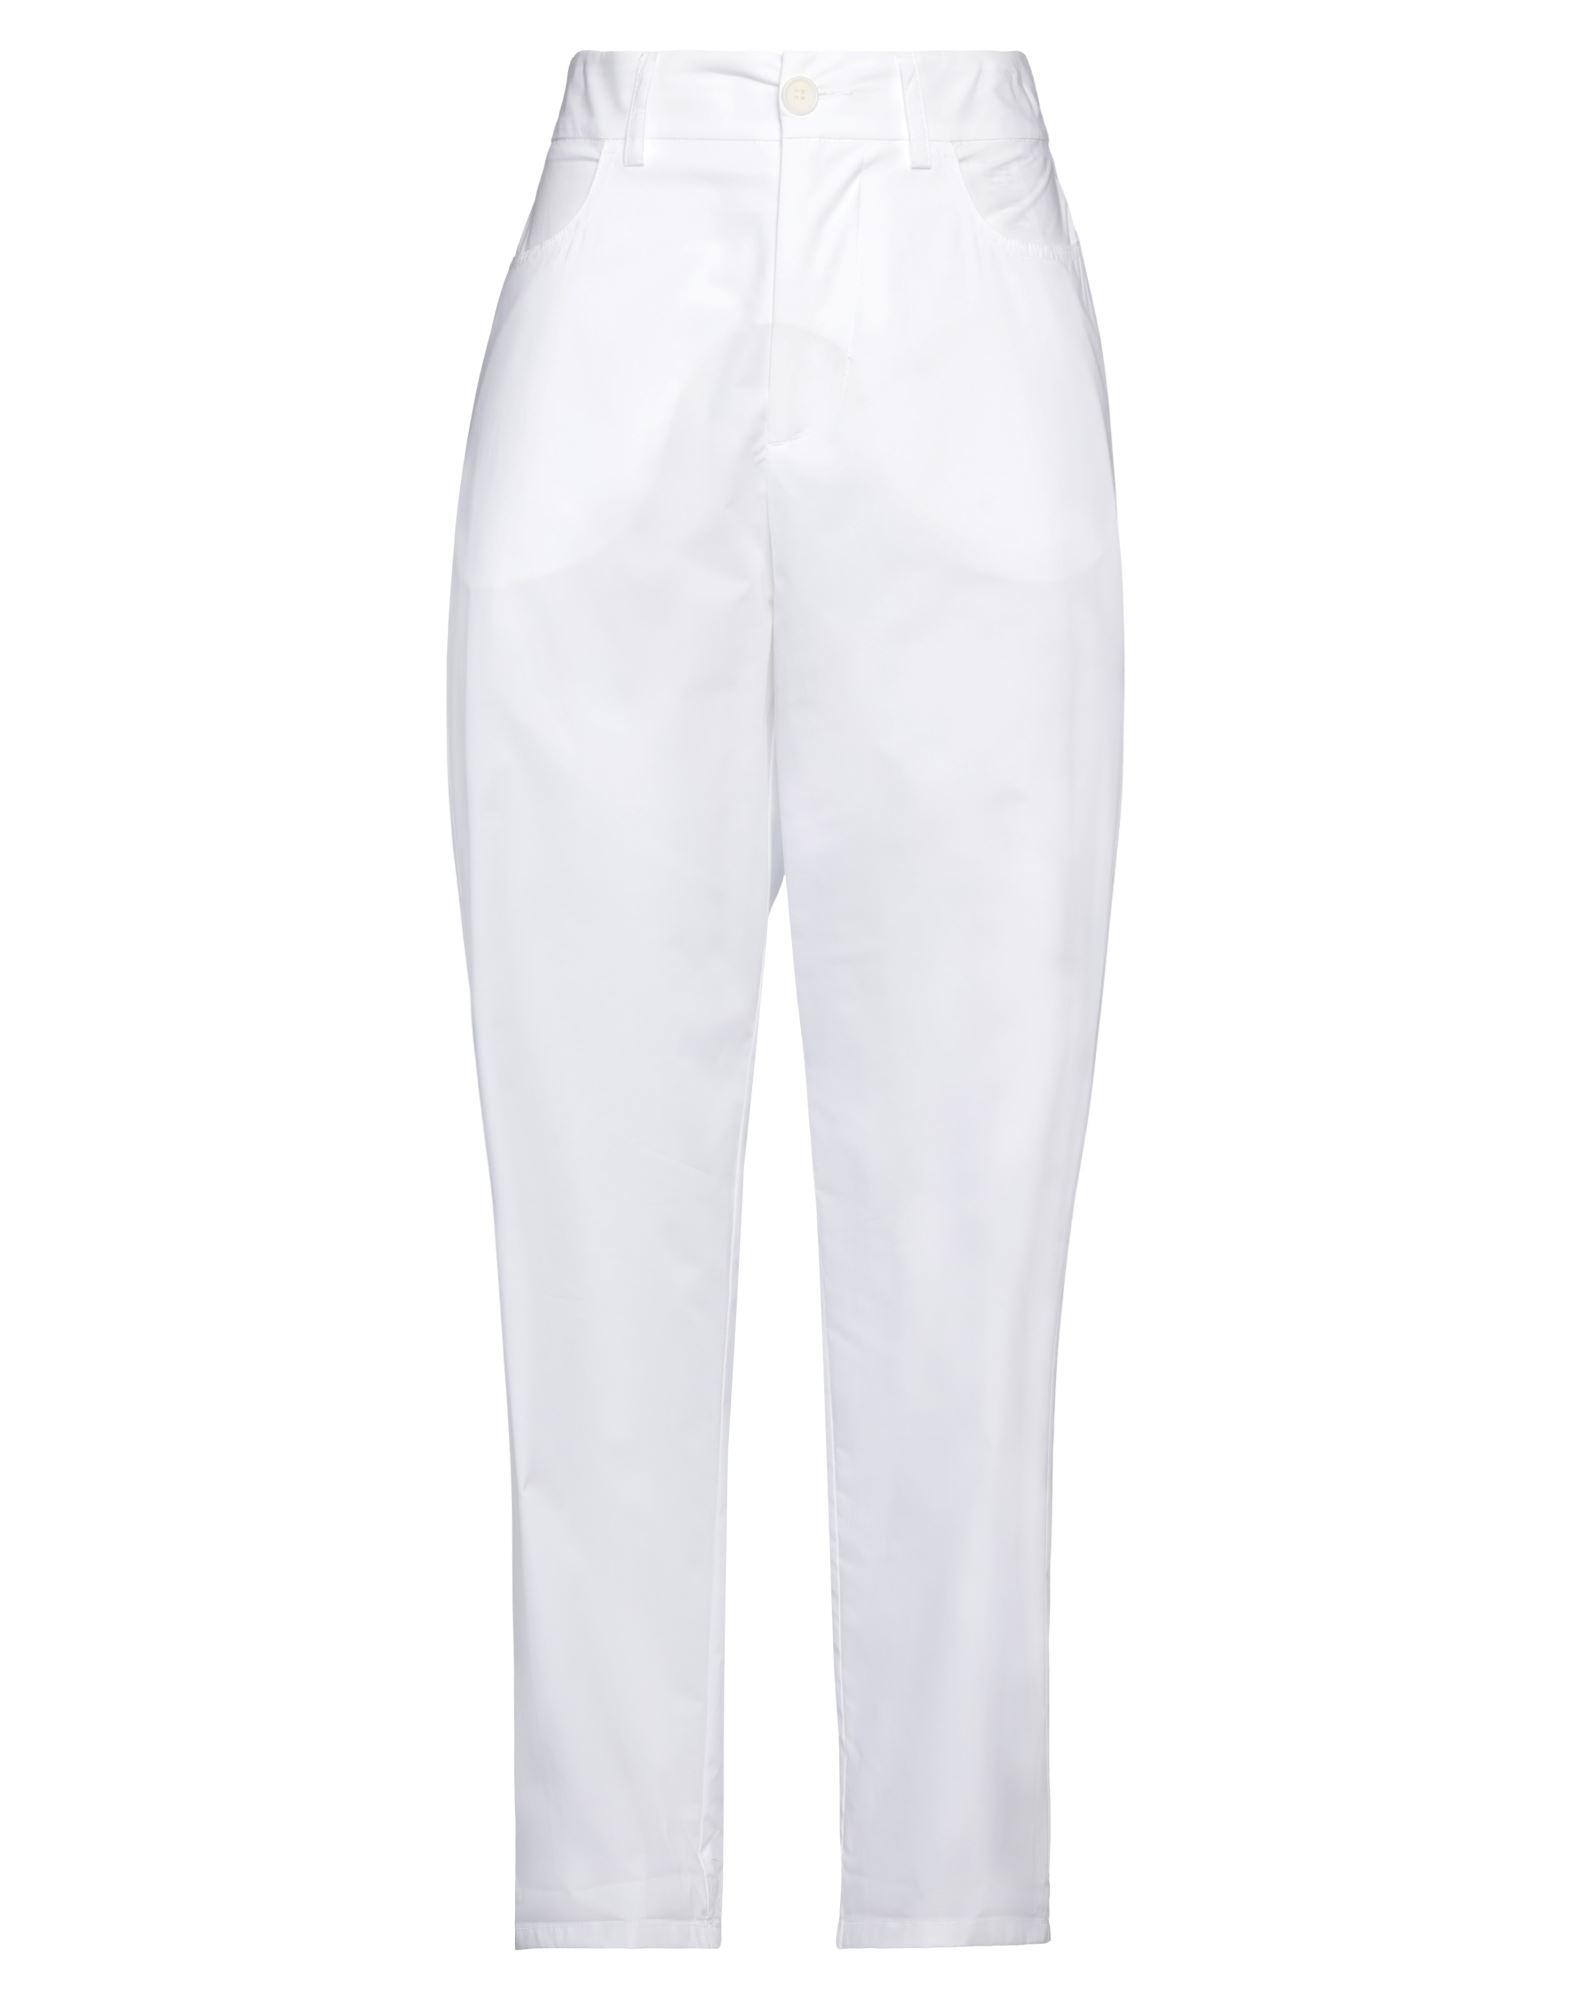 Momoní Woman Pants White Size 10 Cotton